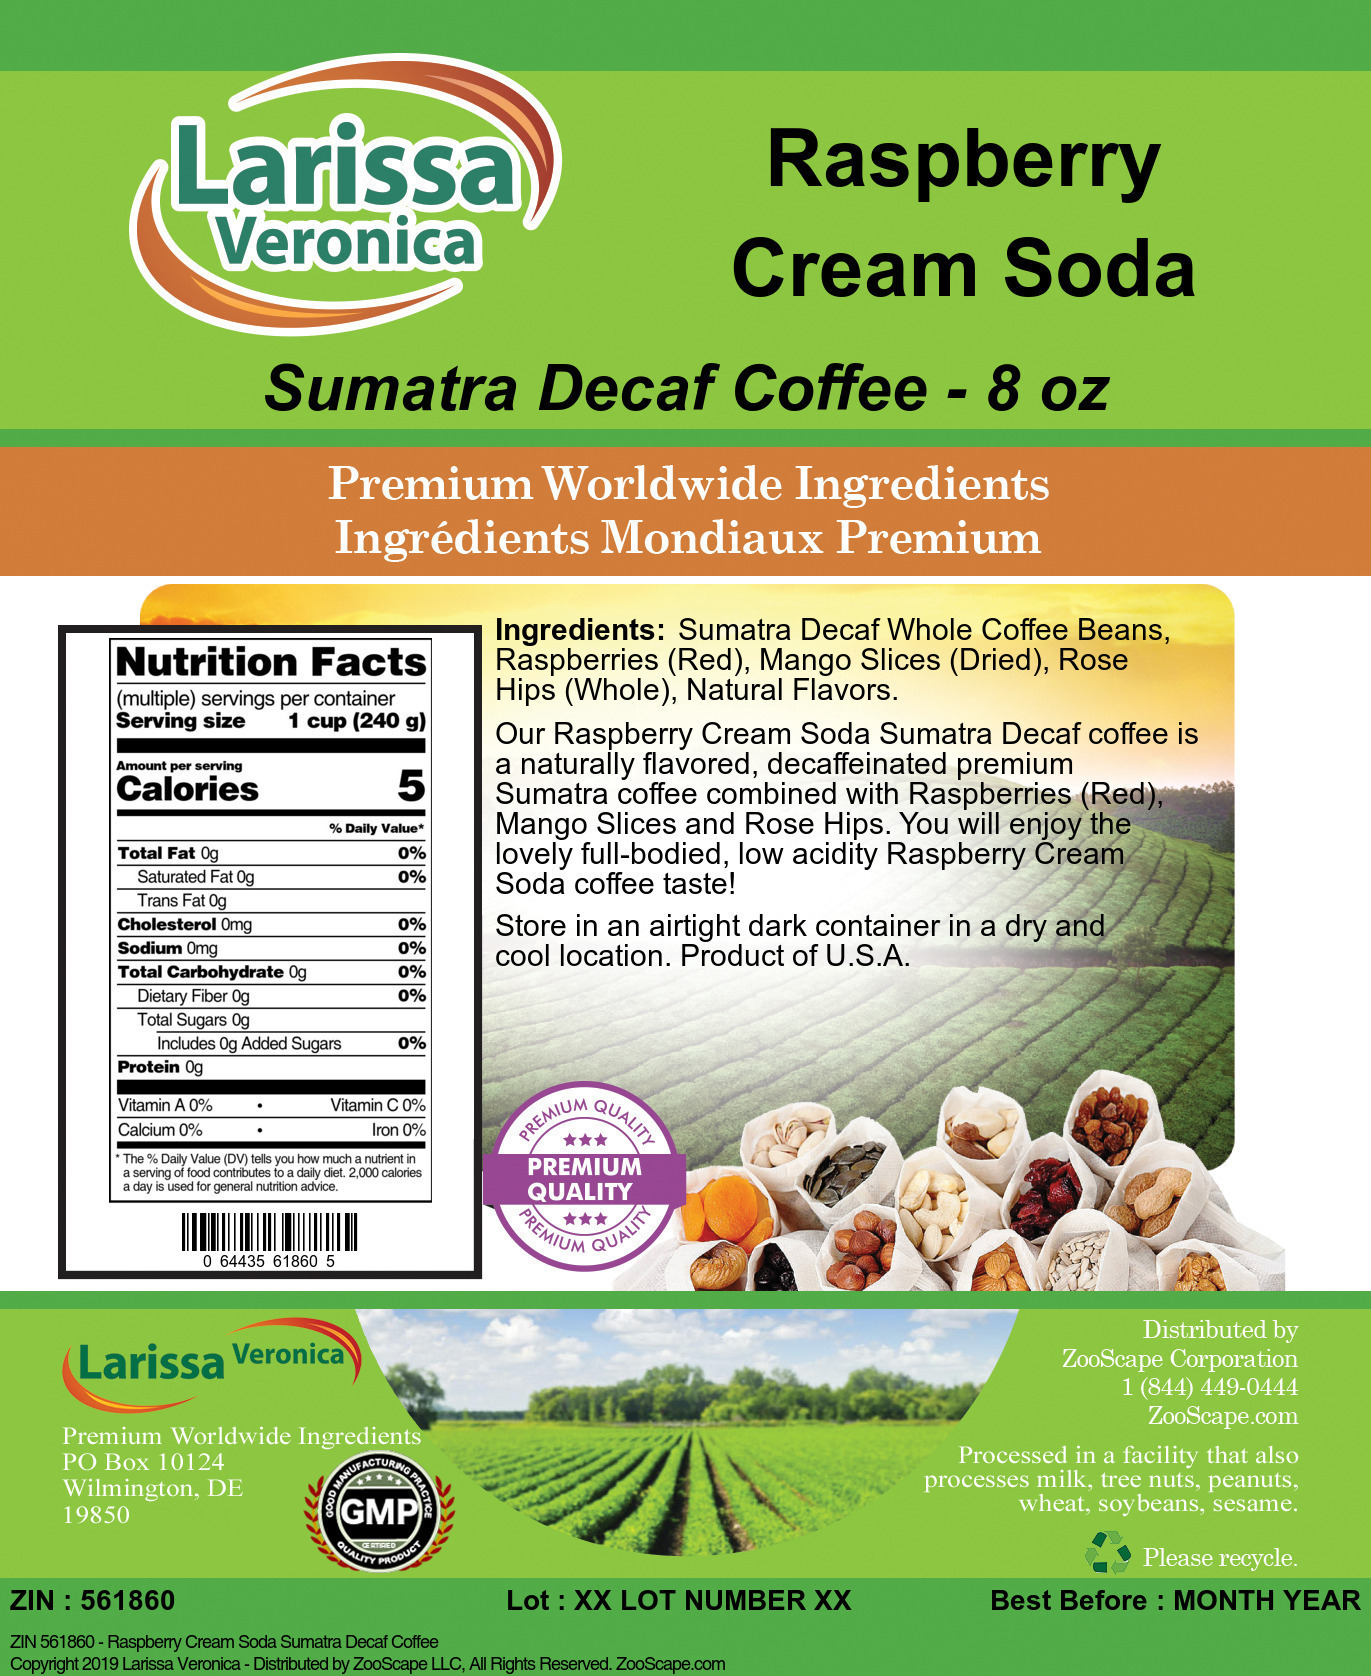 Raspberry Cream Soda Sumatra Decaf Coffee - Label